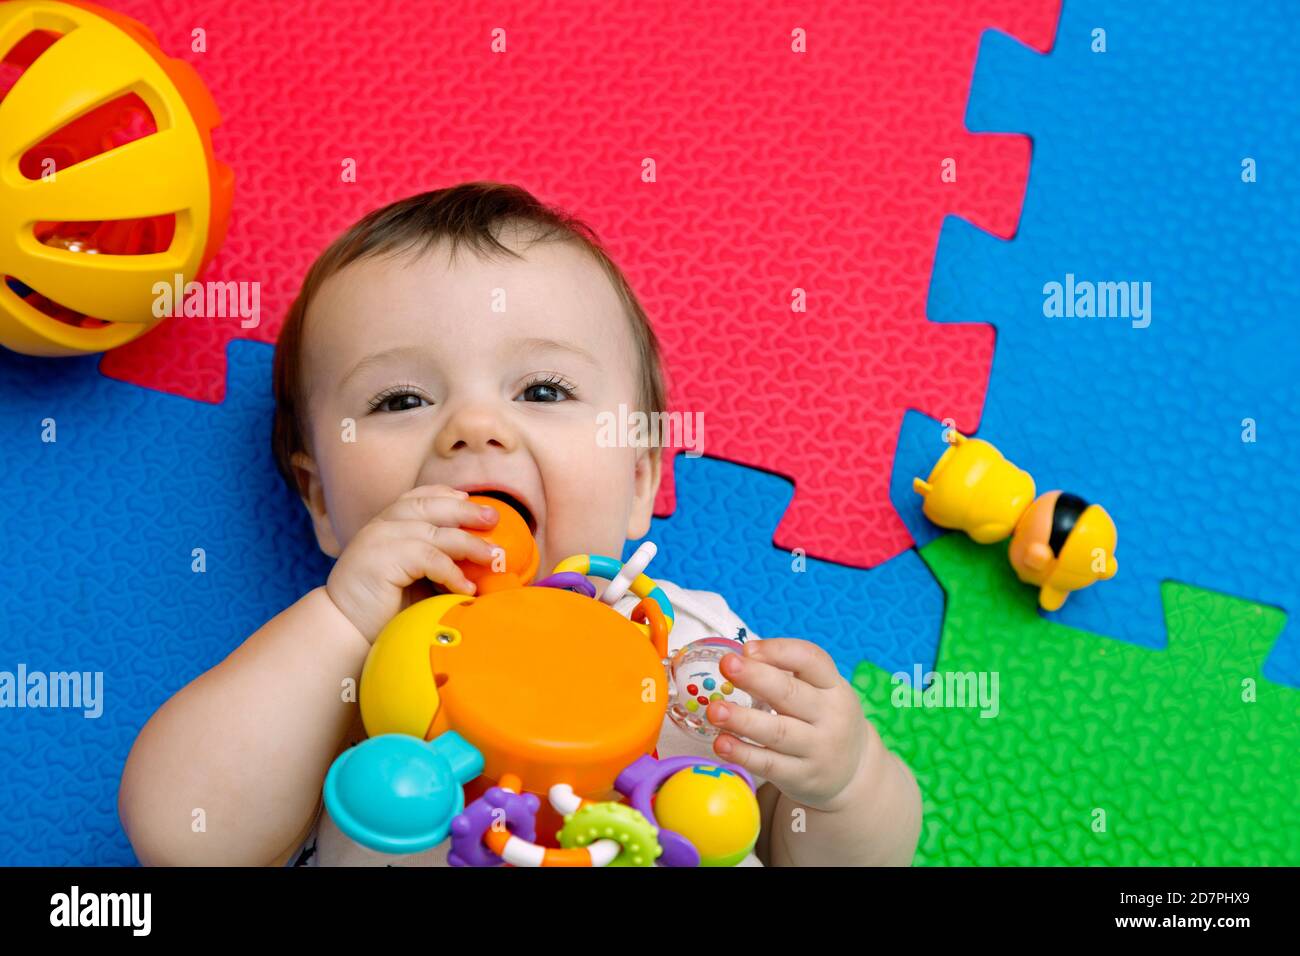 Lustige Baby spielen auf bunten eva Gummiboden. Kleinkind mit Spaß in seinem Haus. Draufsicht. Speicherplatz kopieren. Stockfoto